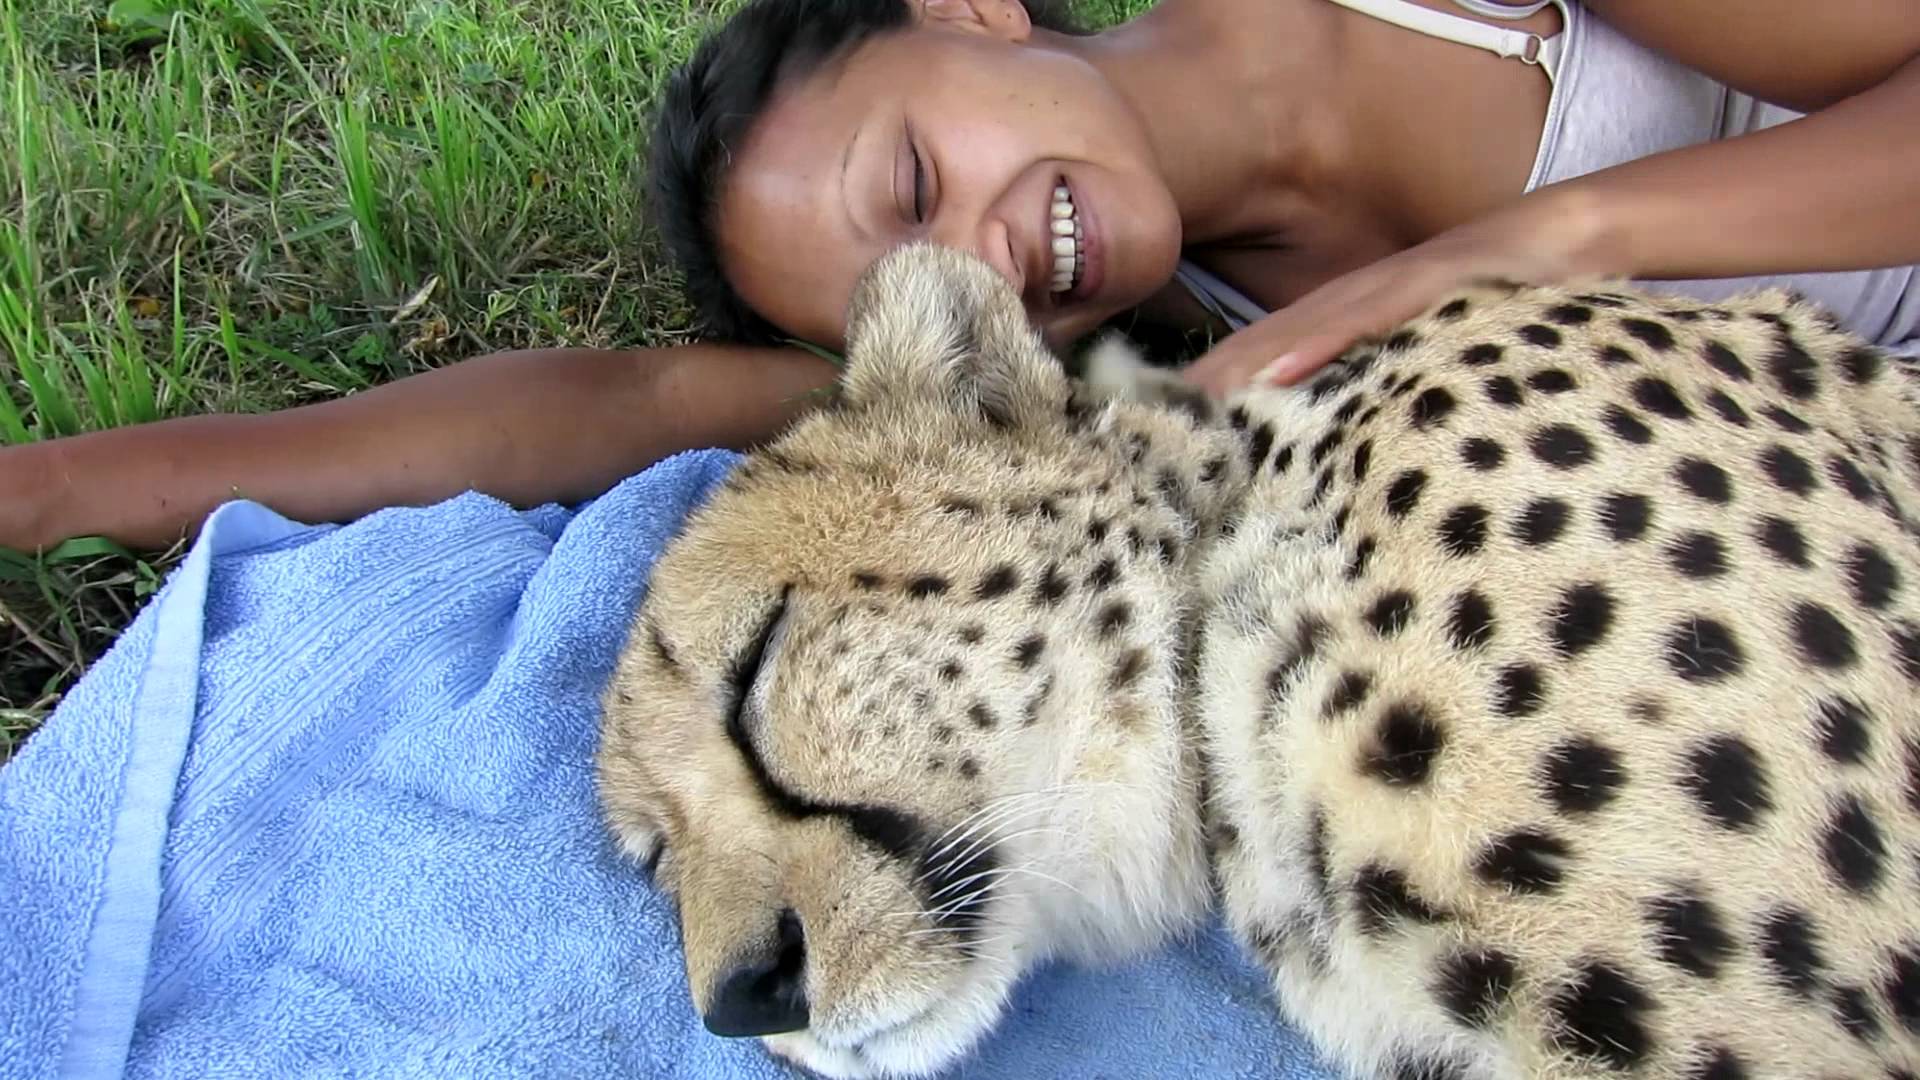 Sleeping with a Cheetah at Cheetah Experience Bloemfontein, SA - YouTube